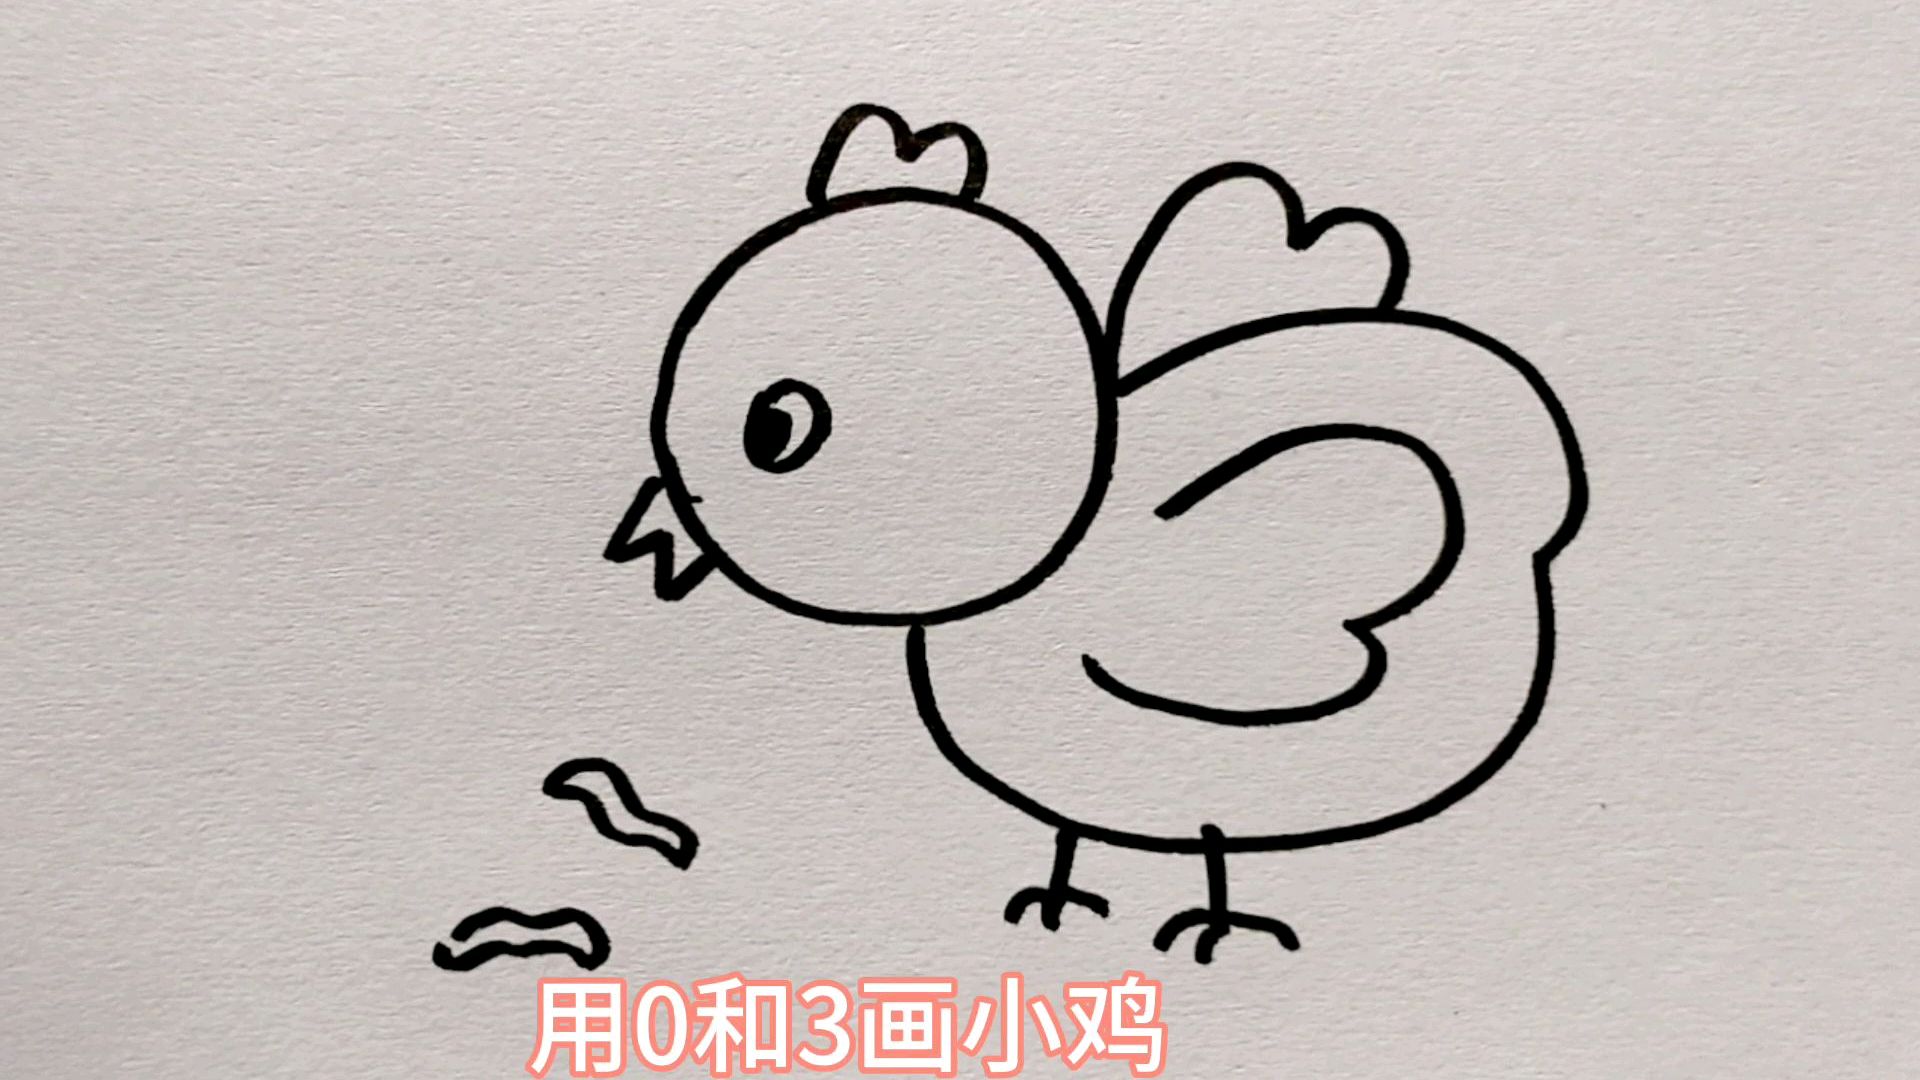 00:24  来源:好看视频-用03333画小鸡 很简单 服务升级 3小鸟:用